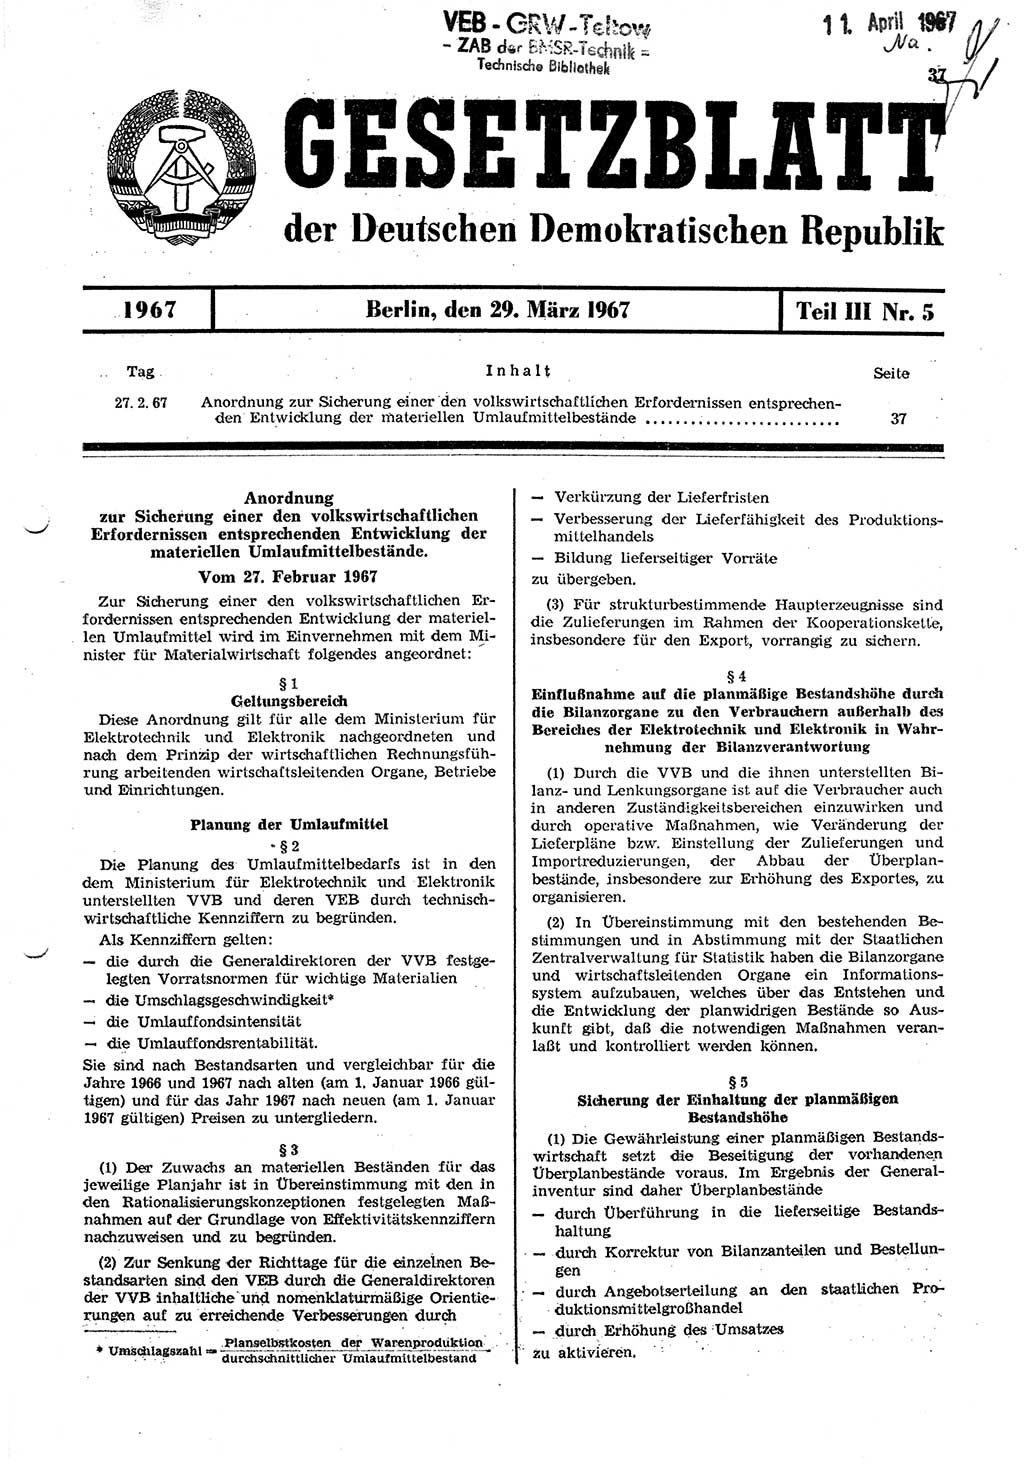 Gesetzblatt (GBl.) der Deutschen Demokratischen Republik (DDR) Teil ⅠⅠⅠ 1967, Seite 37 (GBl. DDR ⅠⅠⅠ 1967, S. 37)